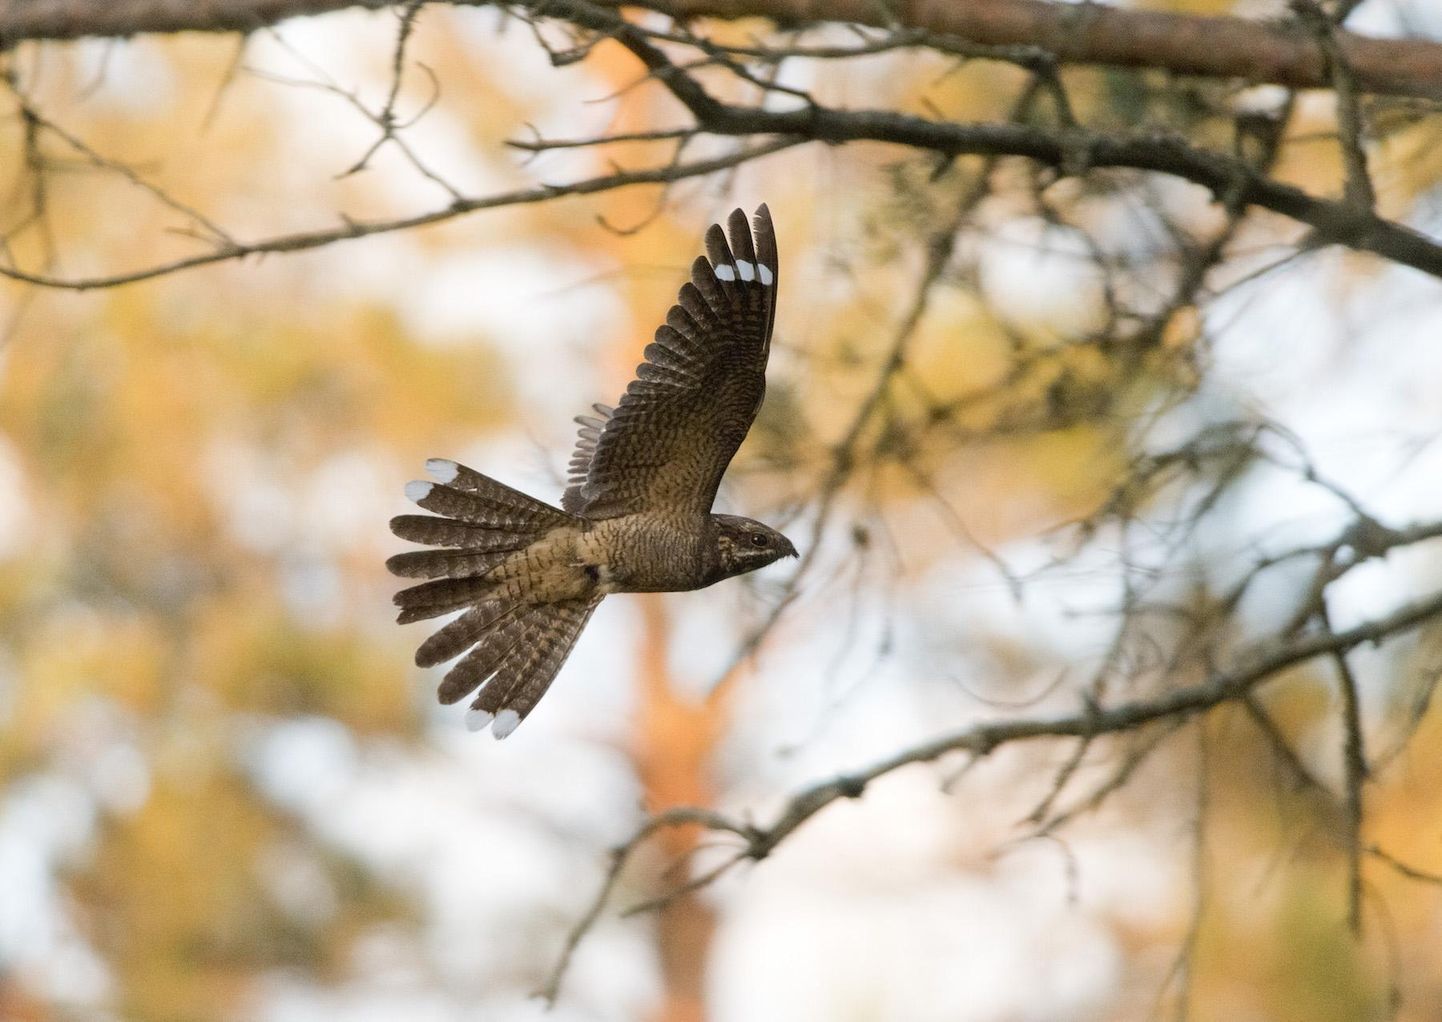 Eesti ornitoloogiaühing kutsub kõiki loodushuvilisi kahe kuu jooksul otsima öösorre ja osalema aasta linnu kuulamise ökovõistlusel.